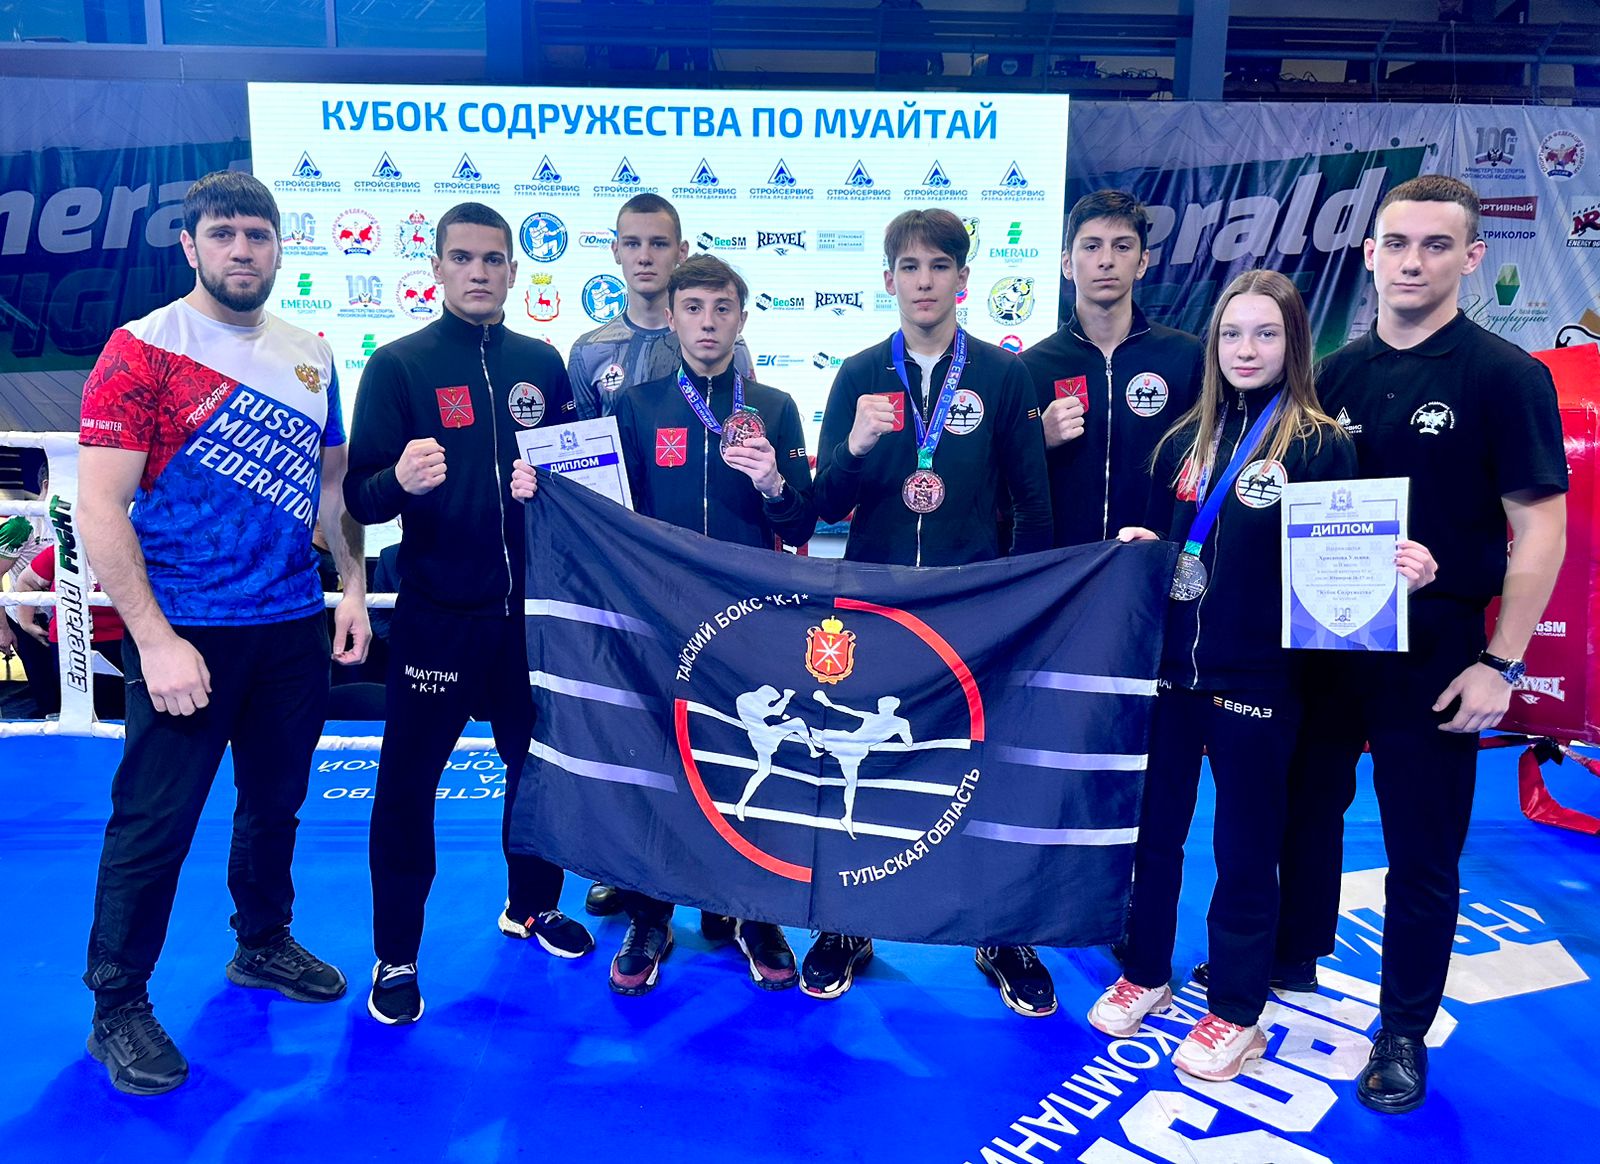 Тульские спортсмены завоевали медали на Всероссийских соревнованиях по тайскому боксу.